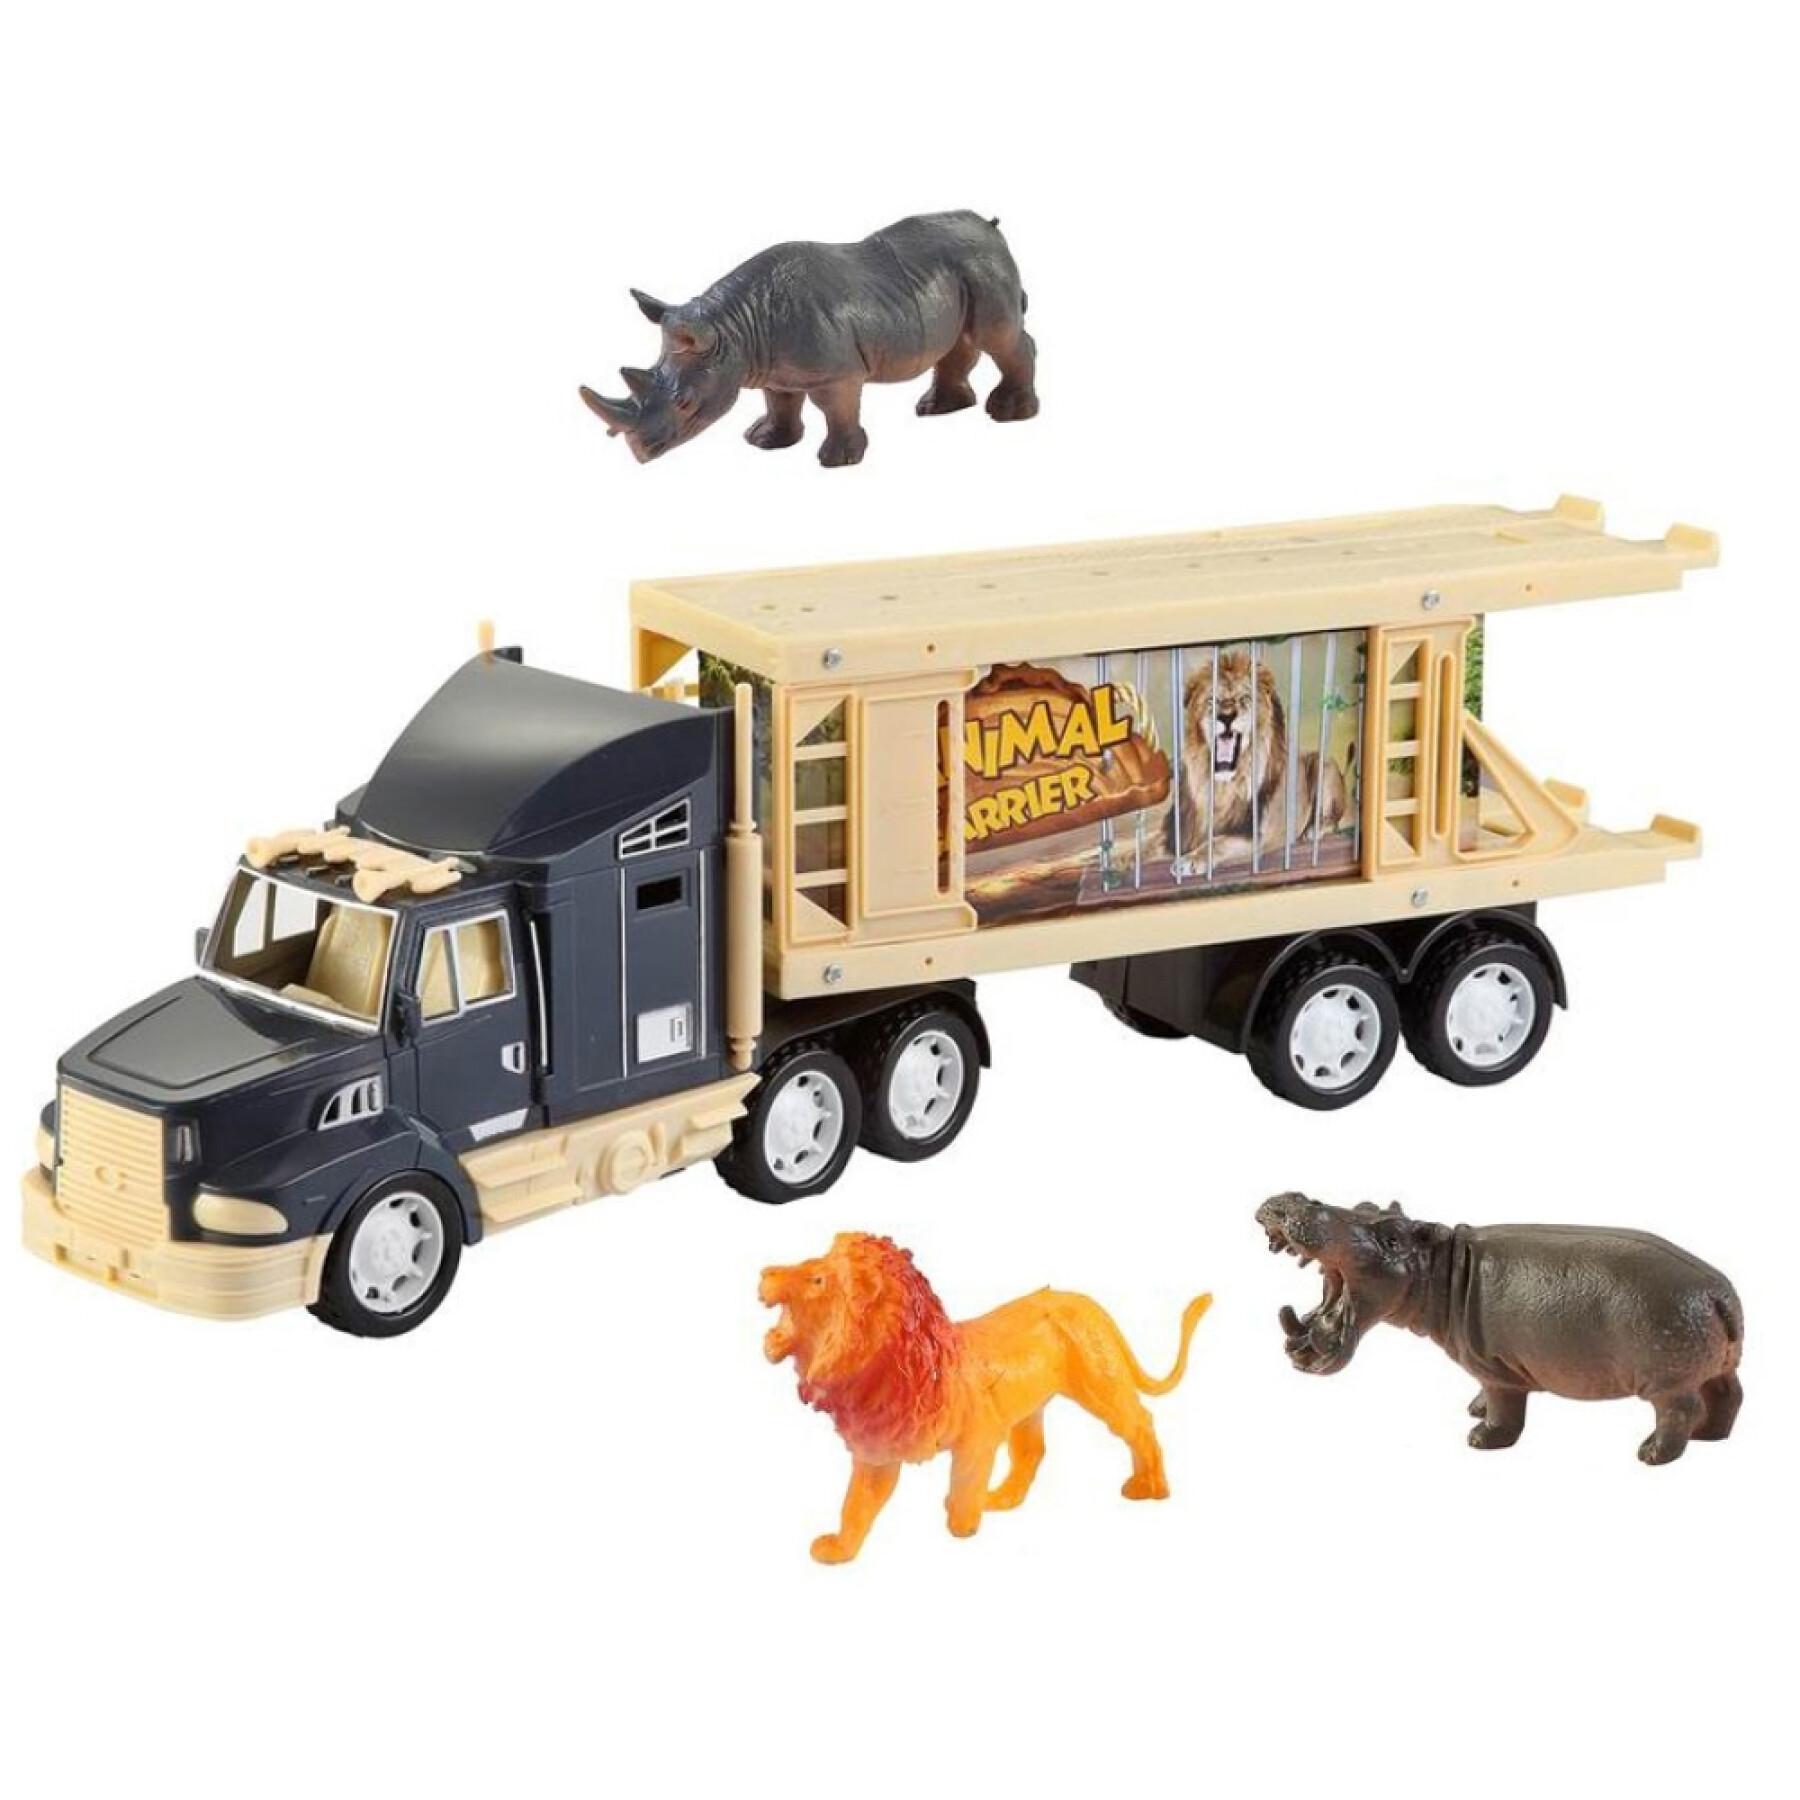 Camion degli animali 2 modelli assortiti Fantastiko